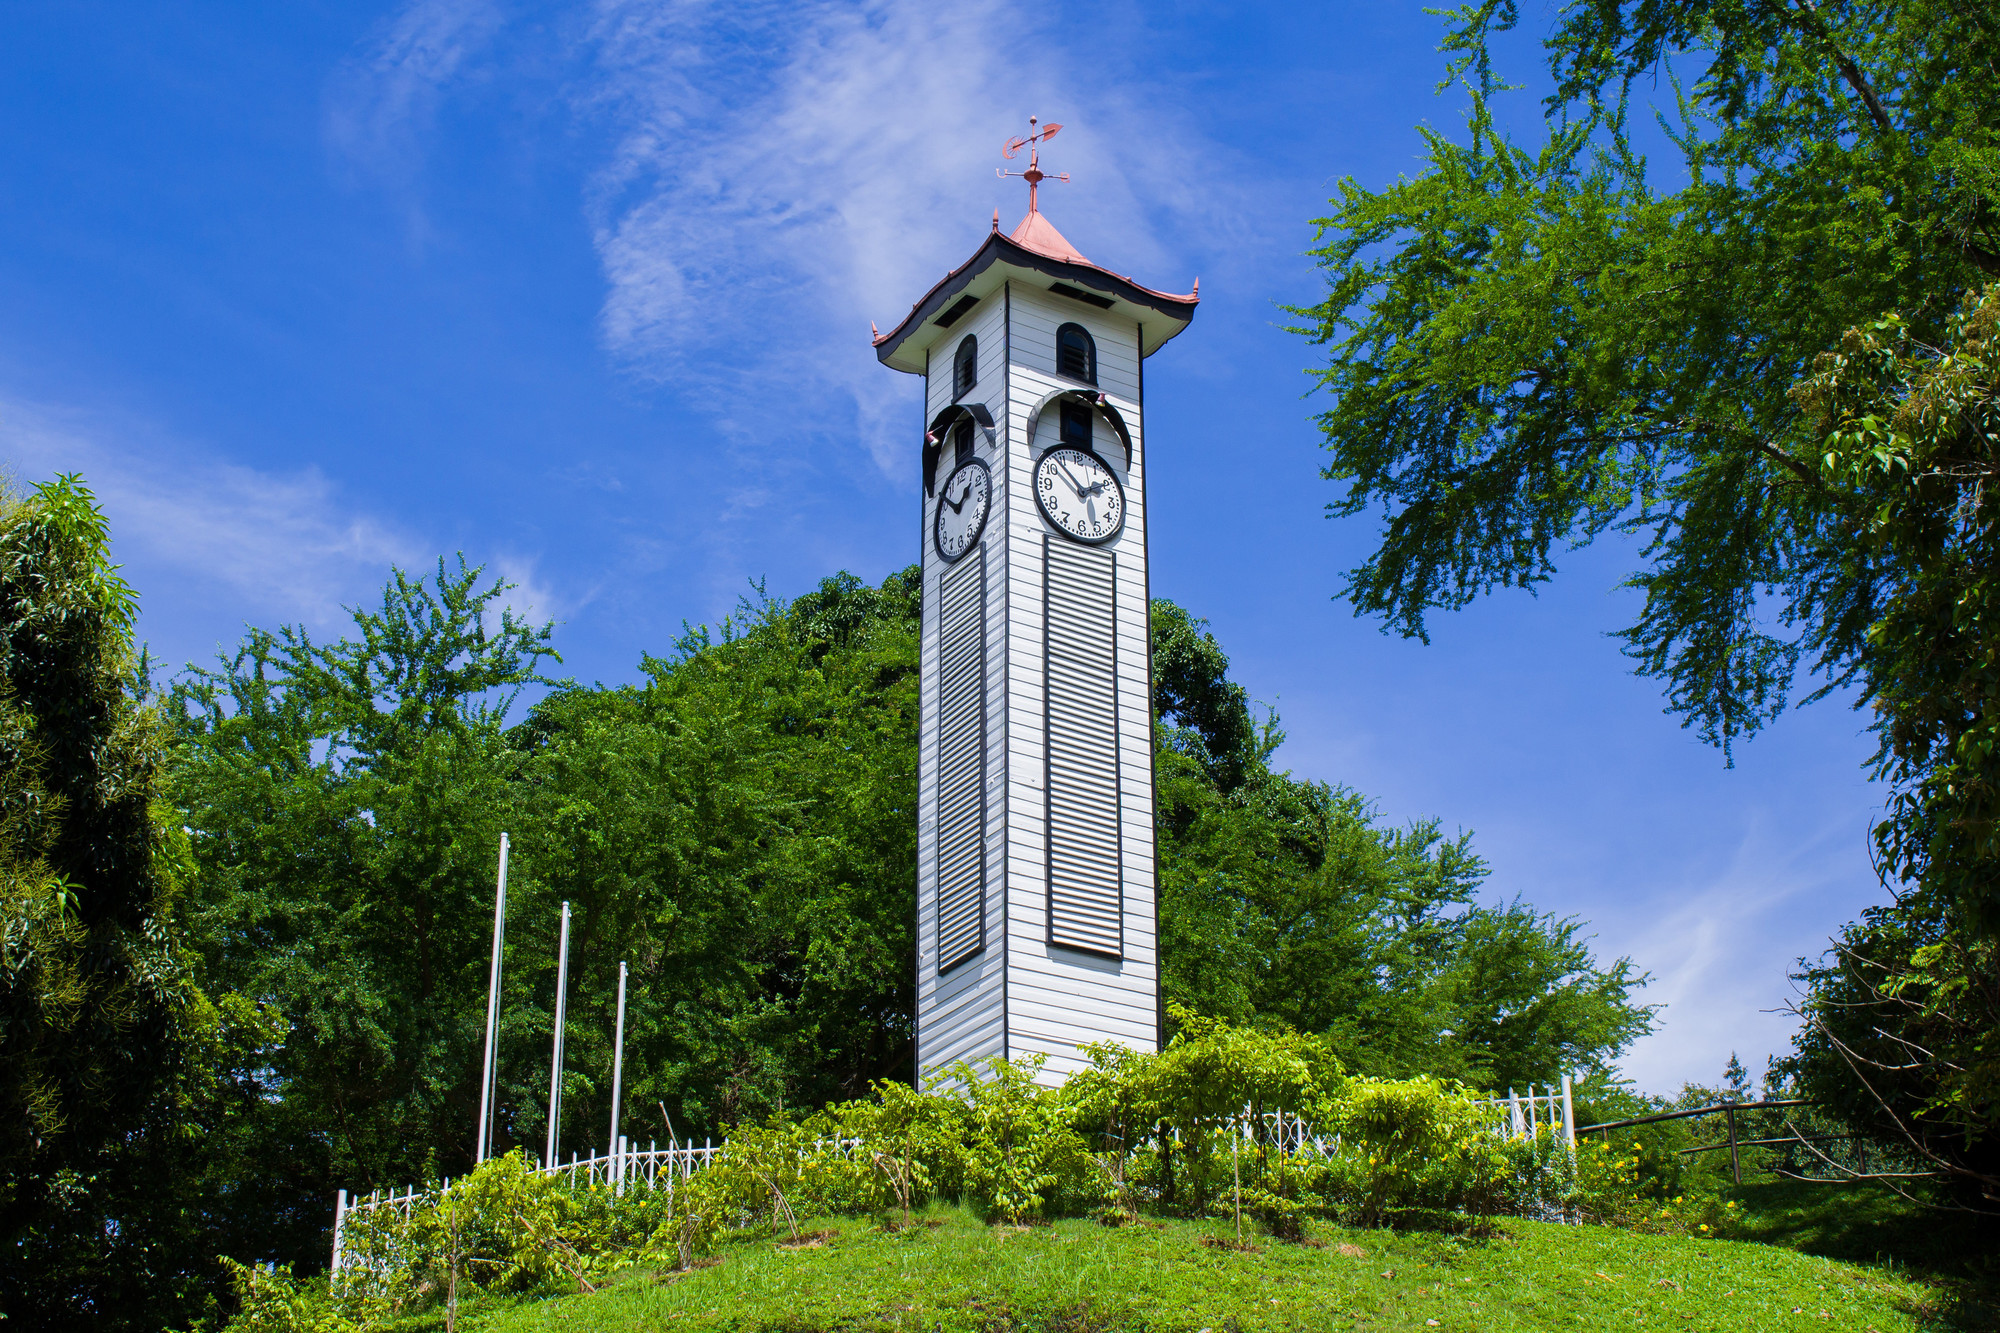 Atkinson Clock © Sabah Tourism_Quntam Lingkapo - Atkinson Clock Tower-lpr